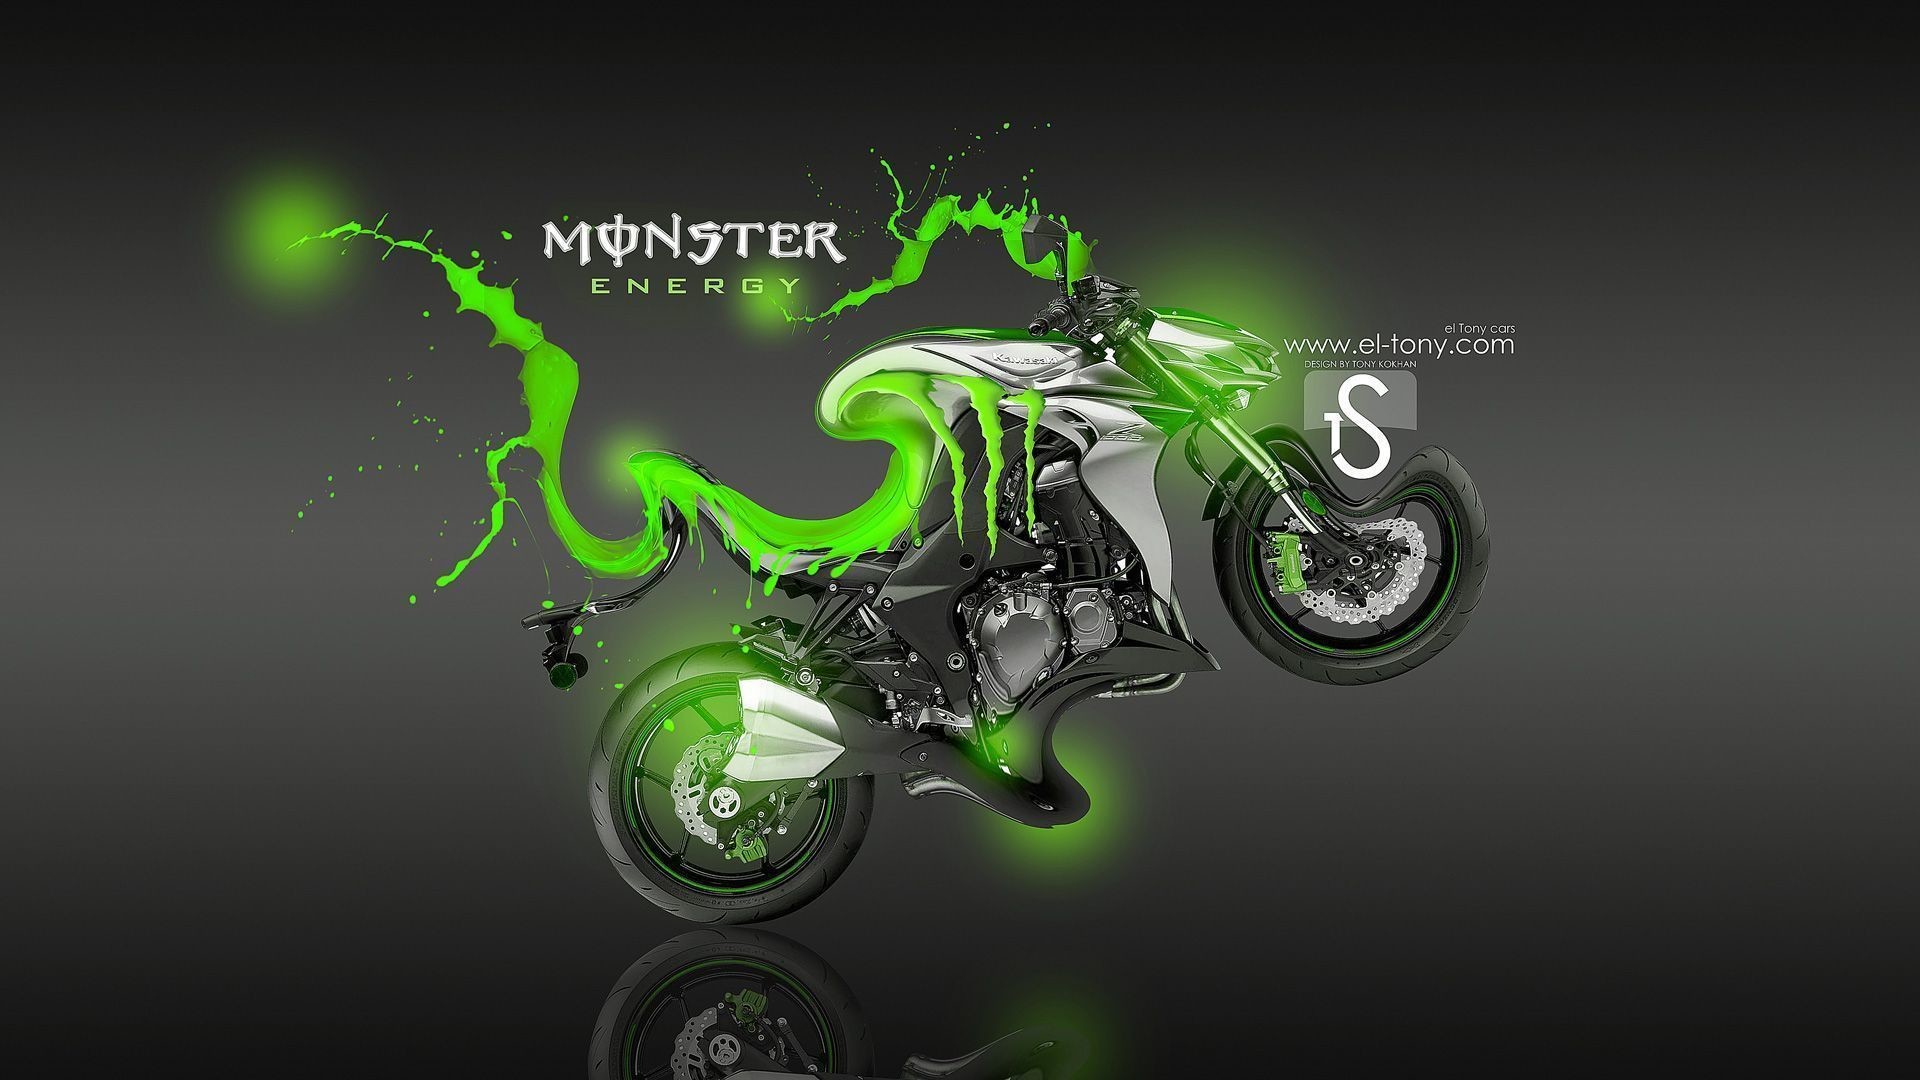 kawasaki logo wallpaper,green,motorcycle,vehicle,superbike racing,motocross